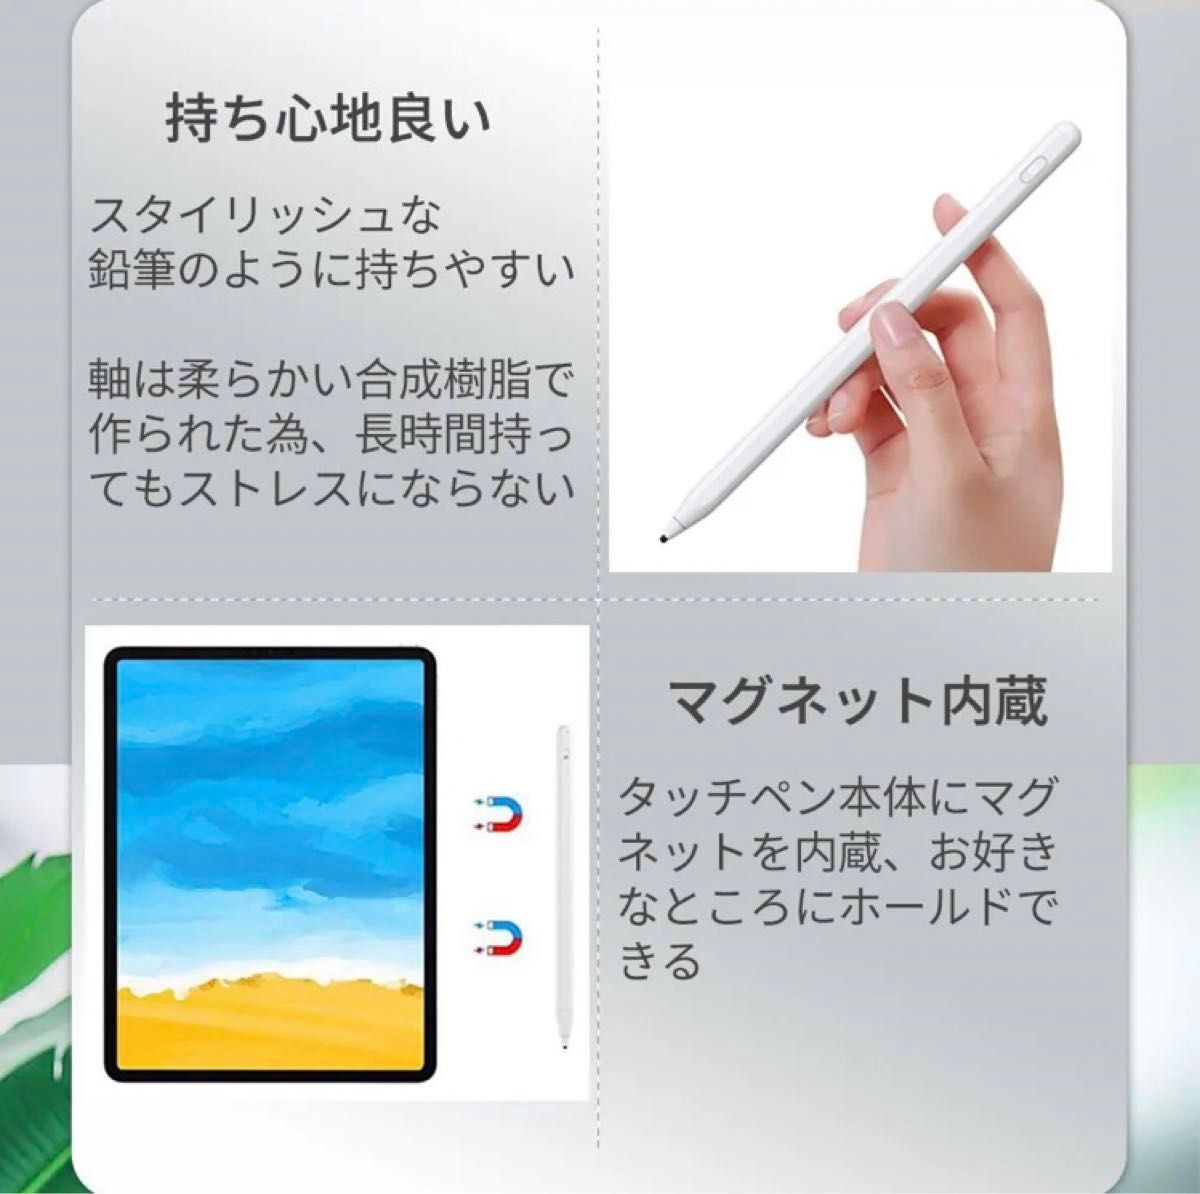 タッチペンP3 pencil アイパッドペン新型丸ペン先 高感度多機種に対応